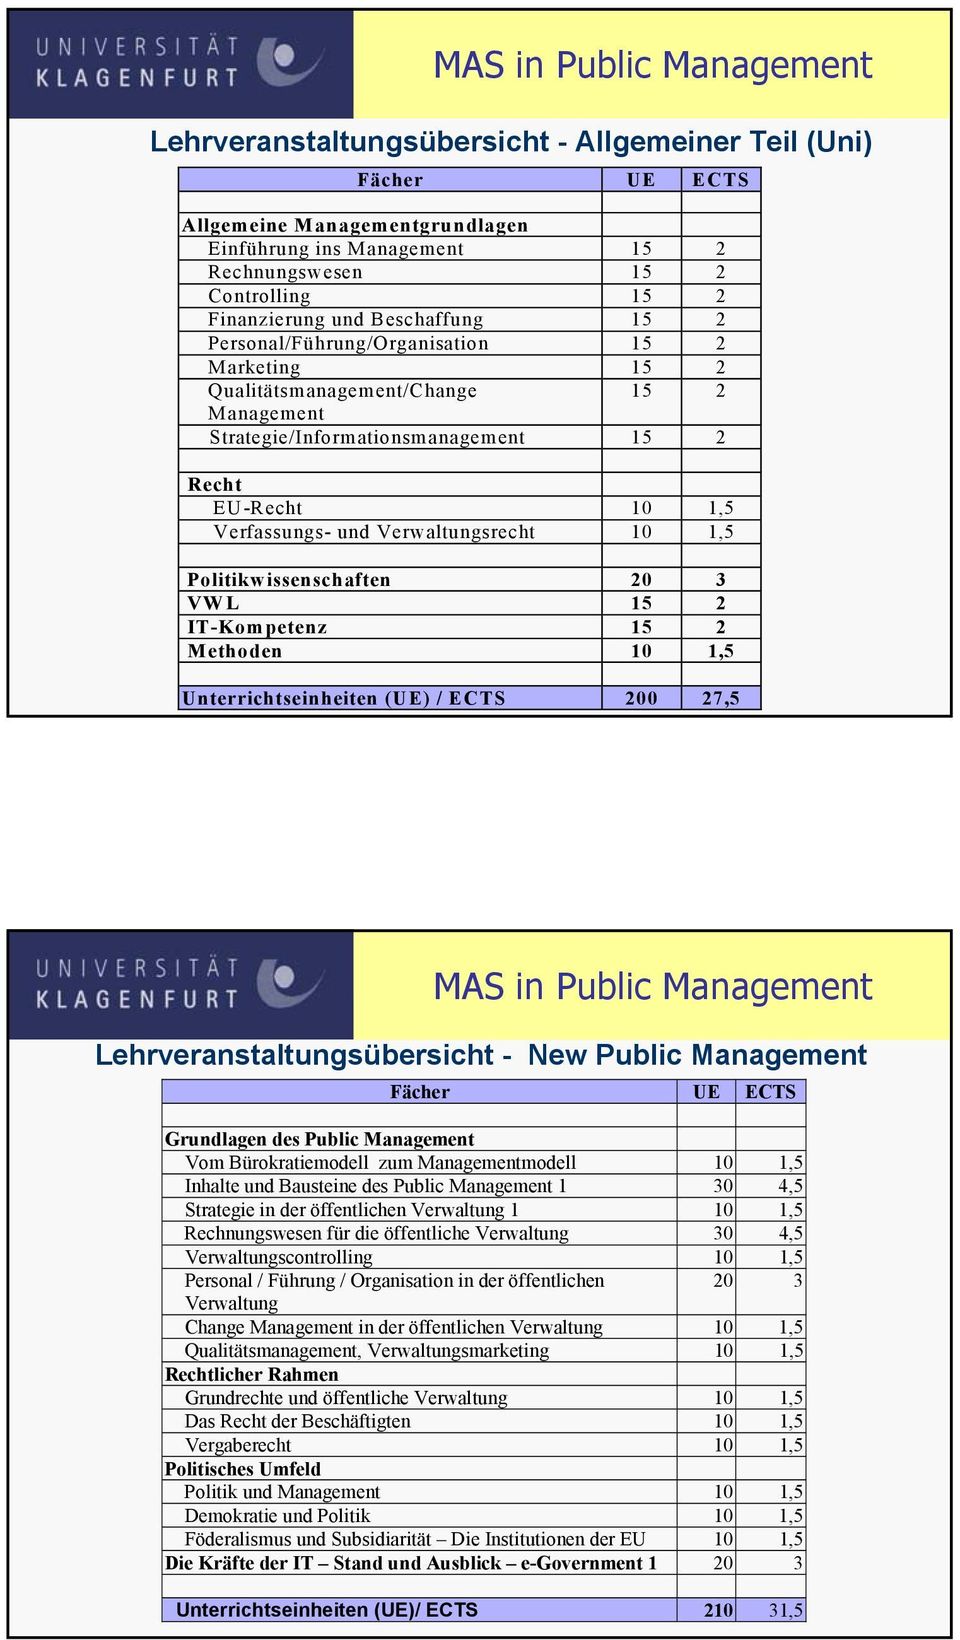 Politikwissenschaften 20 3 VWL 15 2 IT-Kompetenz 15 2 Methoden 10 1,5 Unterrichtseinheiten (UE) / ECTS 200 27,5 Lehrveranstaltungsübersicht - New Public Management Fächer UE ECTS Grundlagen des